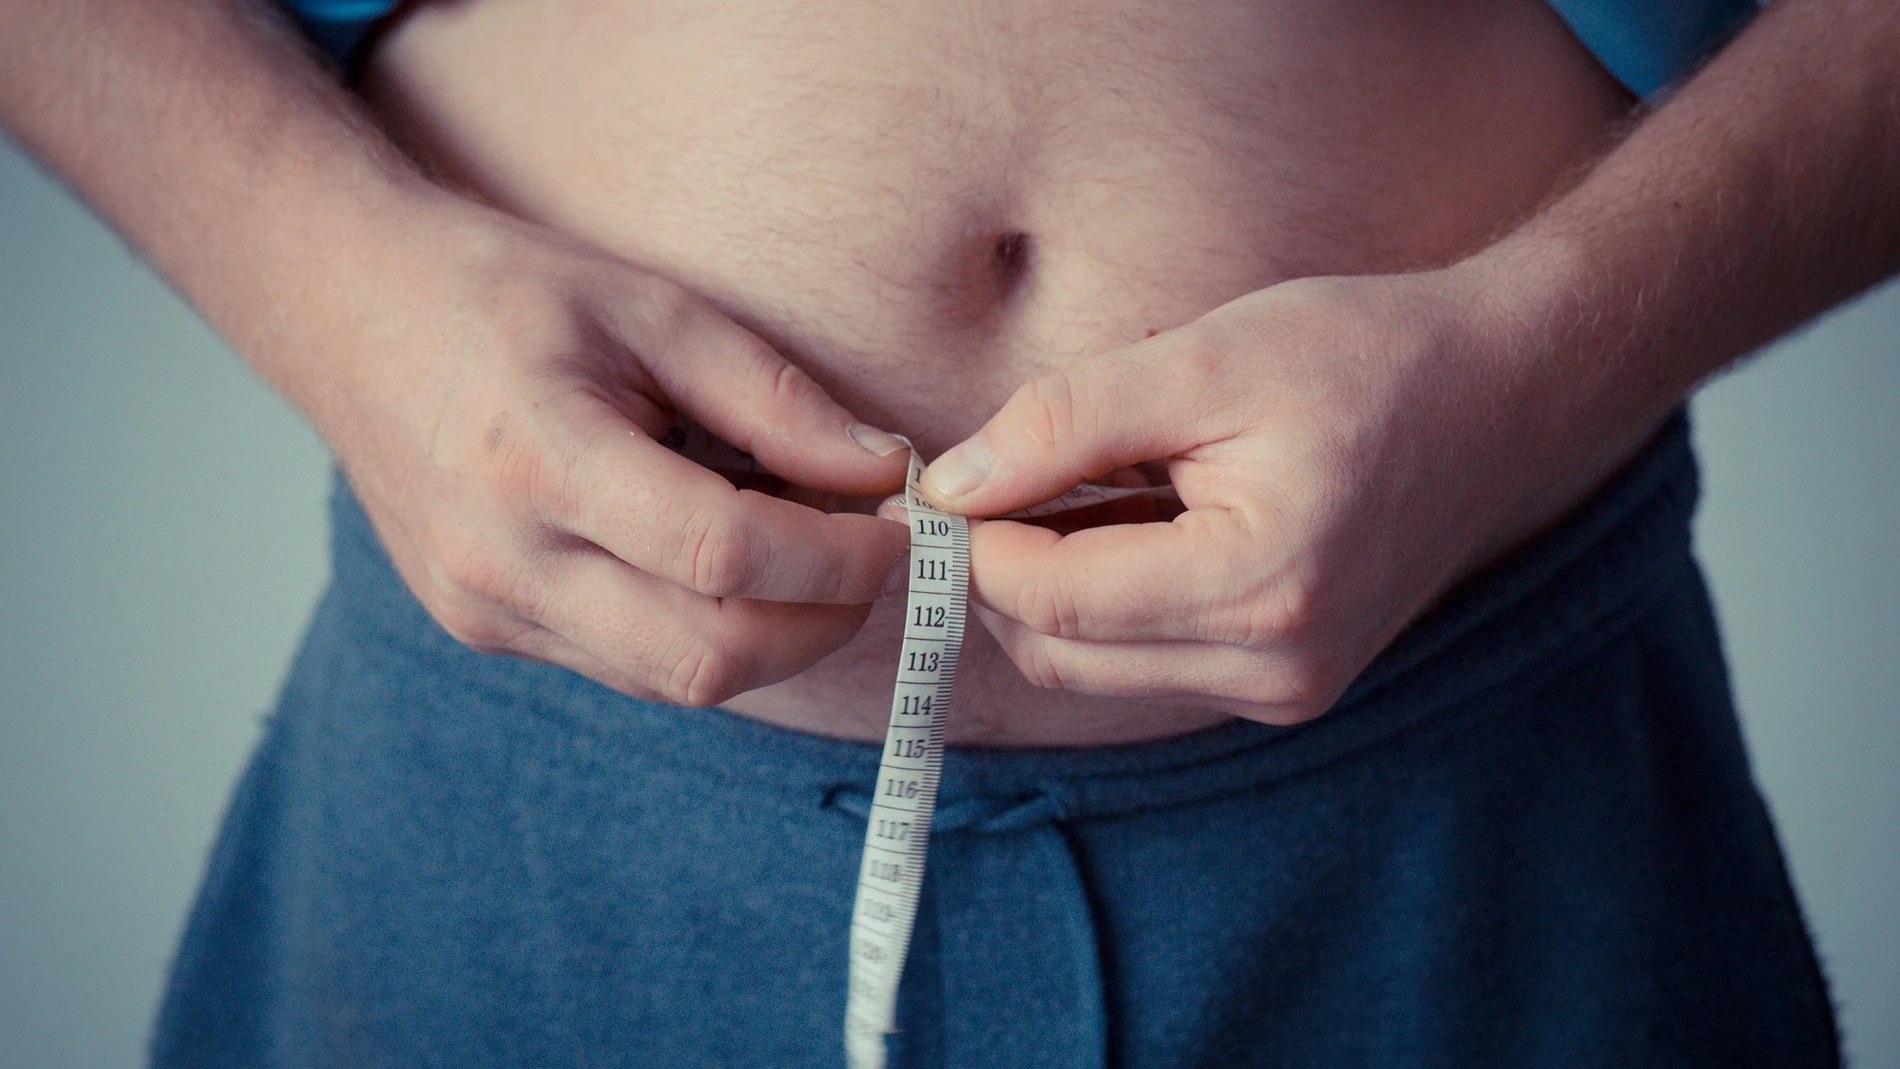 Tipos de barriga y cómo eliminarlas, Cómo perder peso y panza